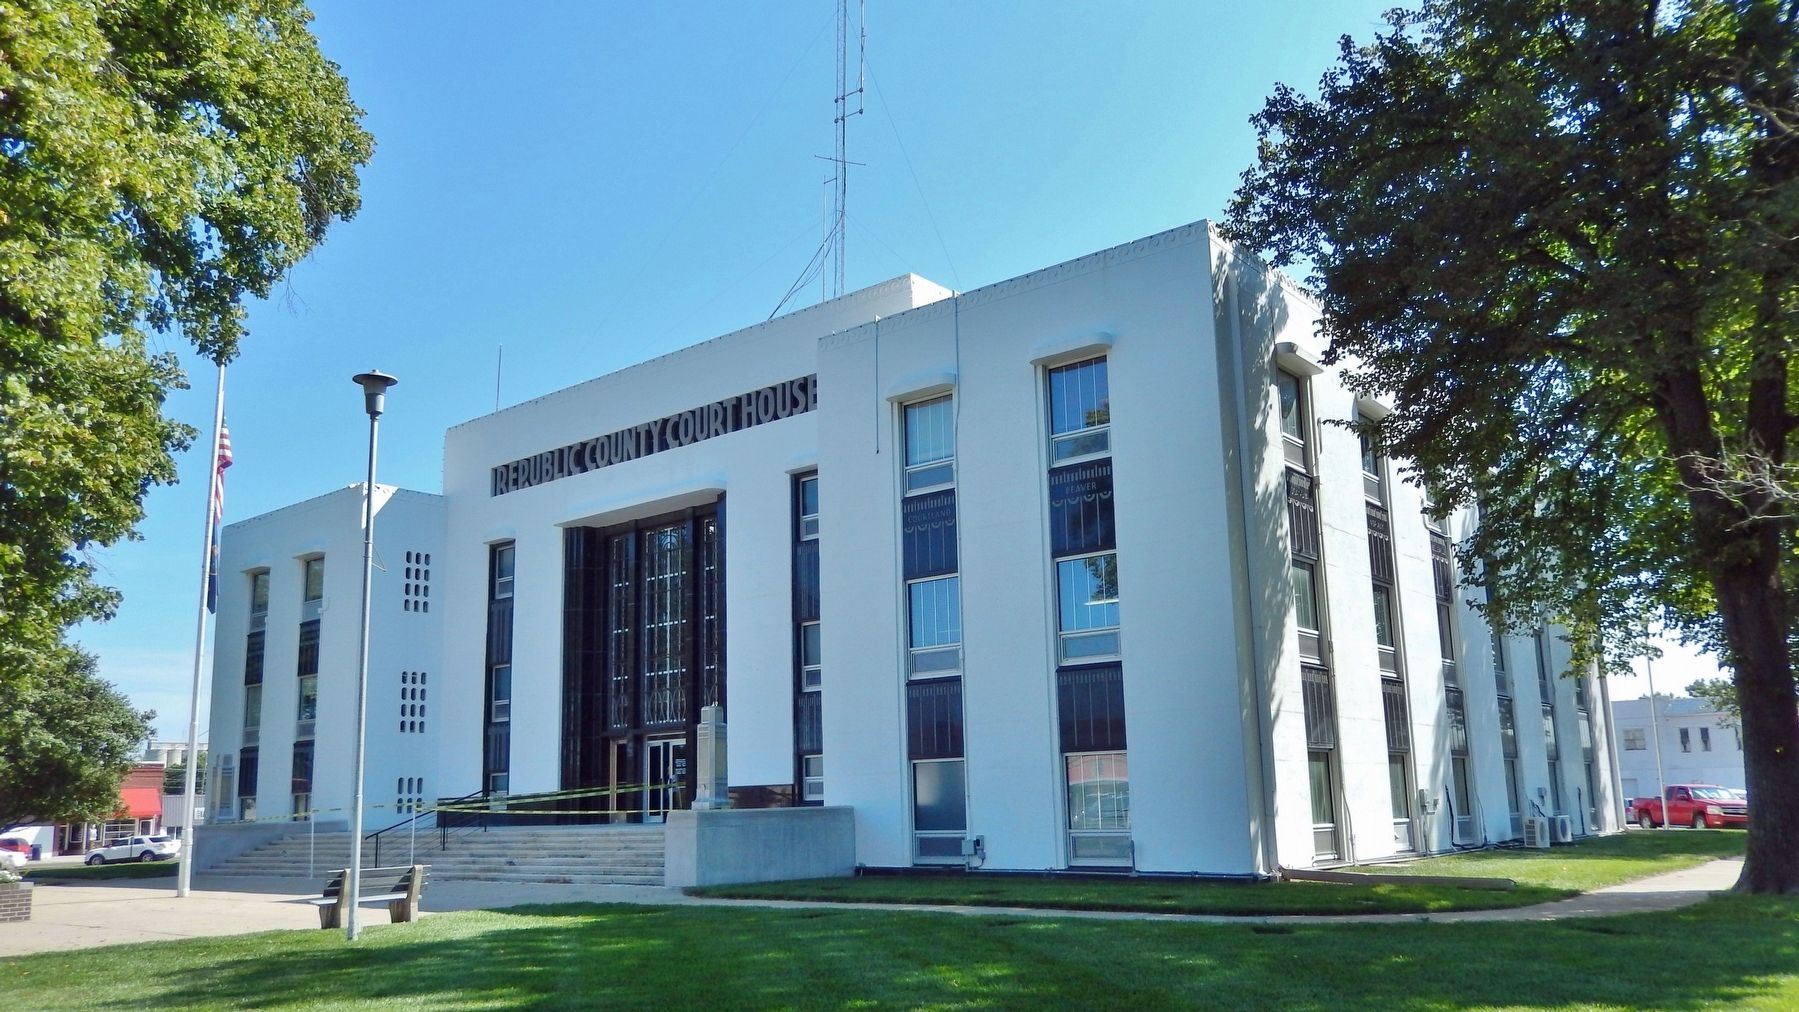 1939 Republic County Courthouse (<i>southwest elevation</i>) image. Click for full size.